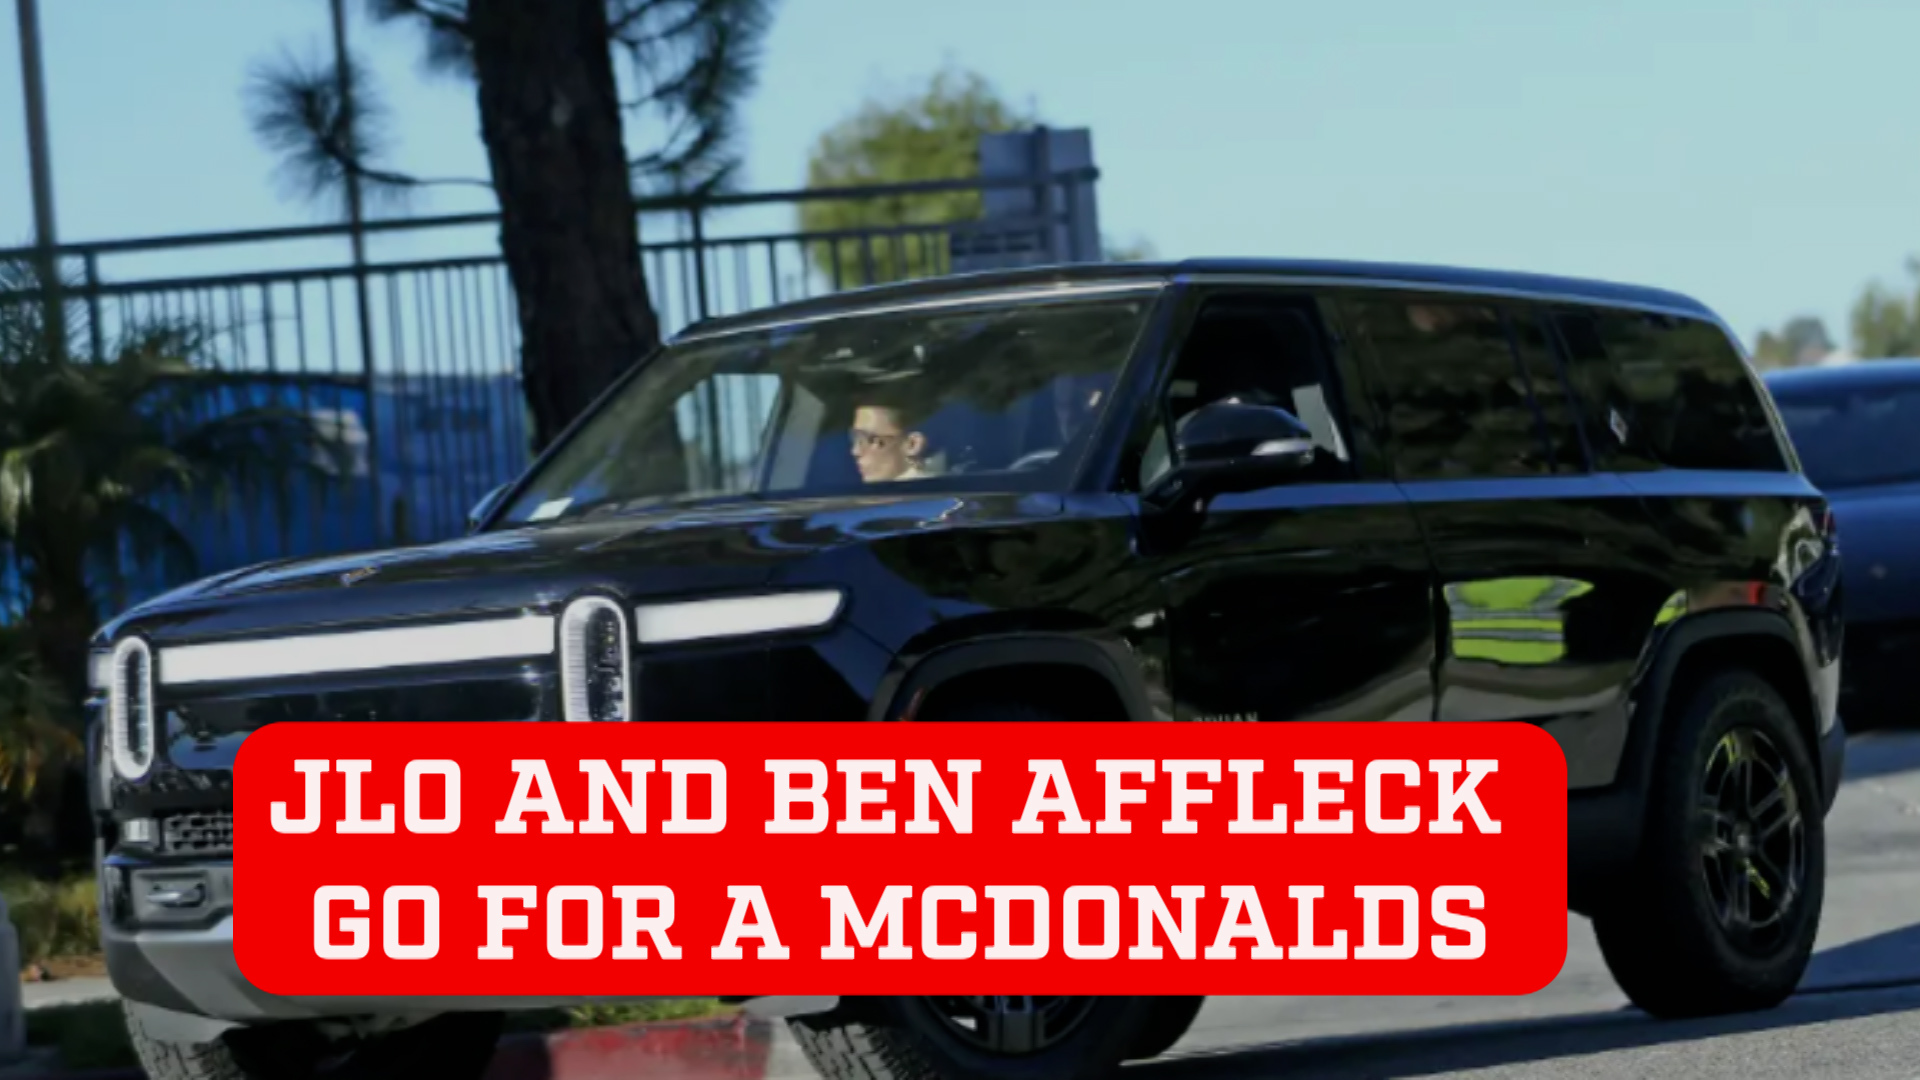 Jennifer Lopez and Ben Affleck reconcile over McDonald's drive-thru meal after huge argument